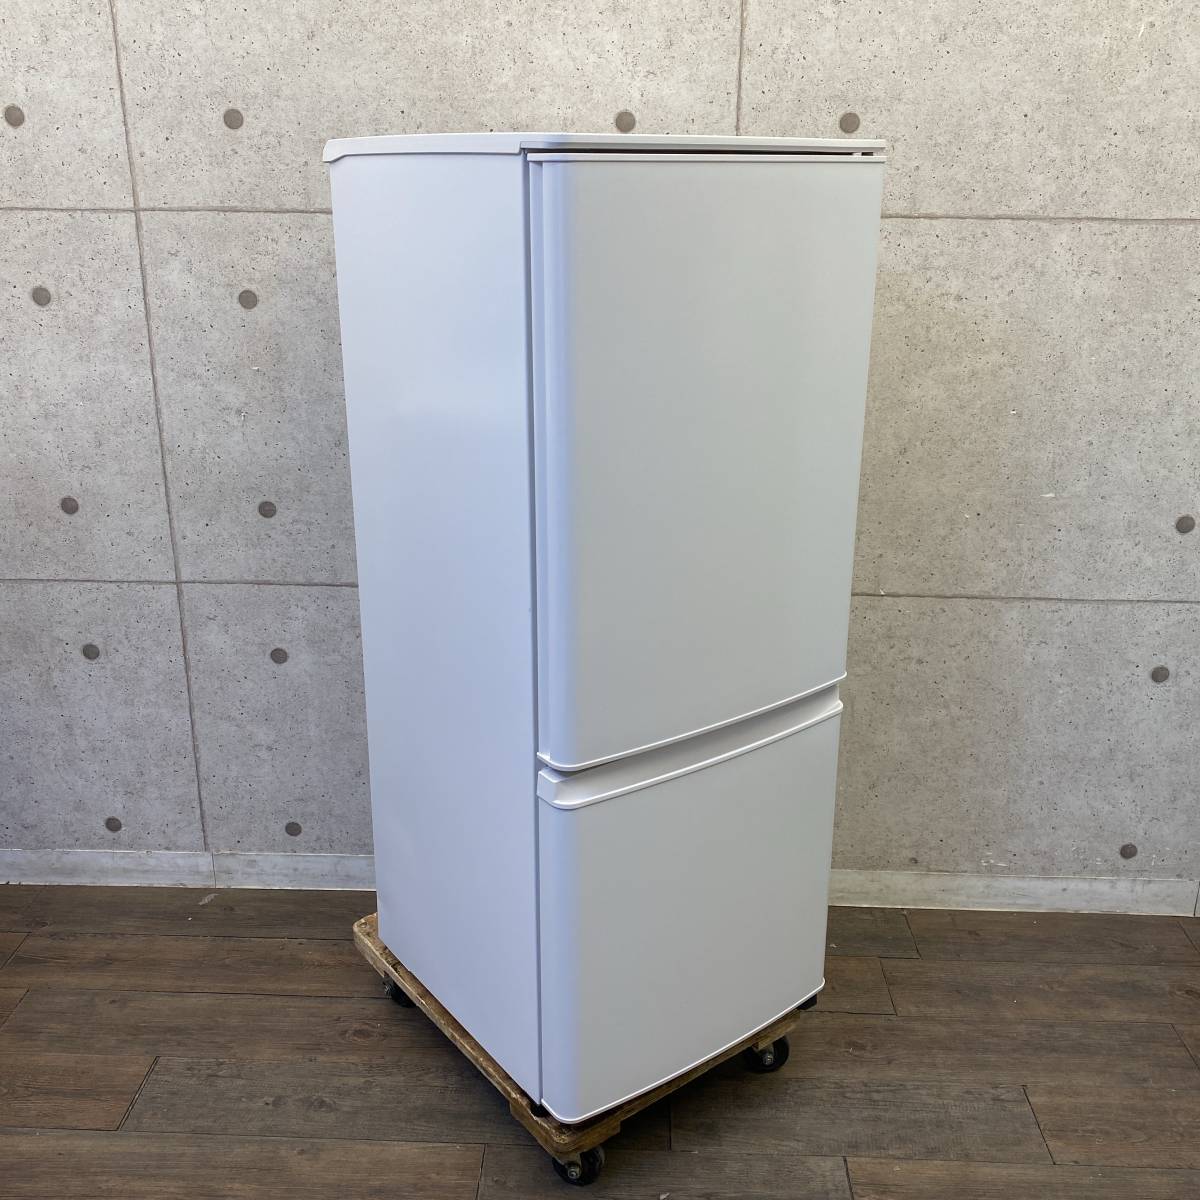 【直接引取可】美品 22年製 2ドア冷蔵庫 三菱 MR-P15G-W1 146L ホワイト 引出型冷凍 動作品 A0112-6